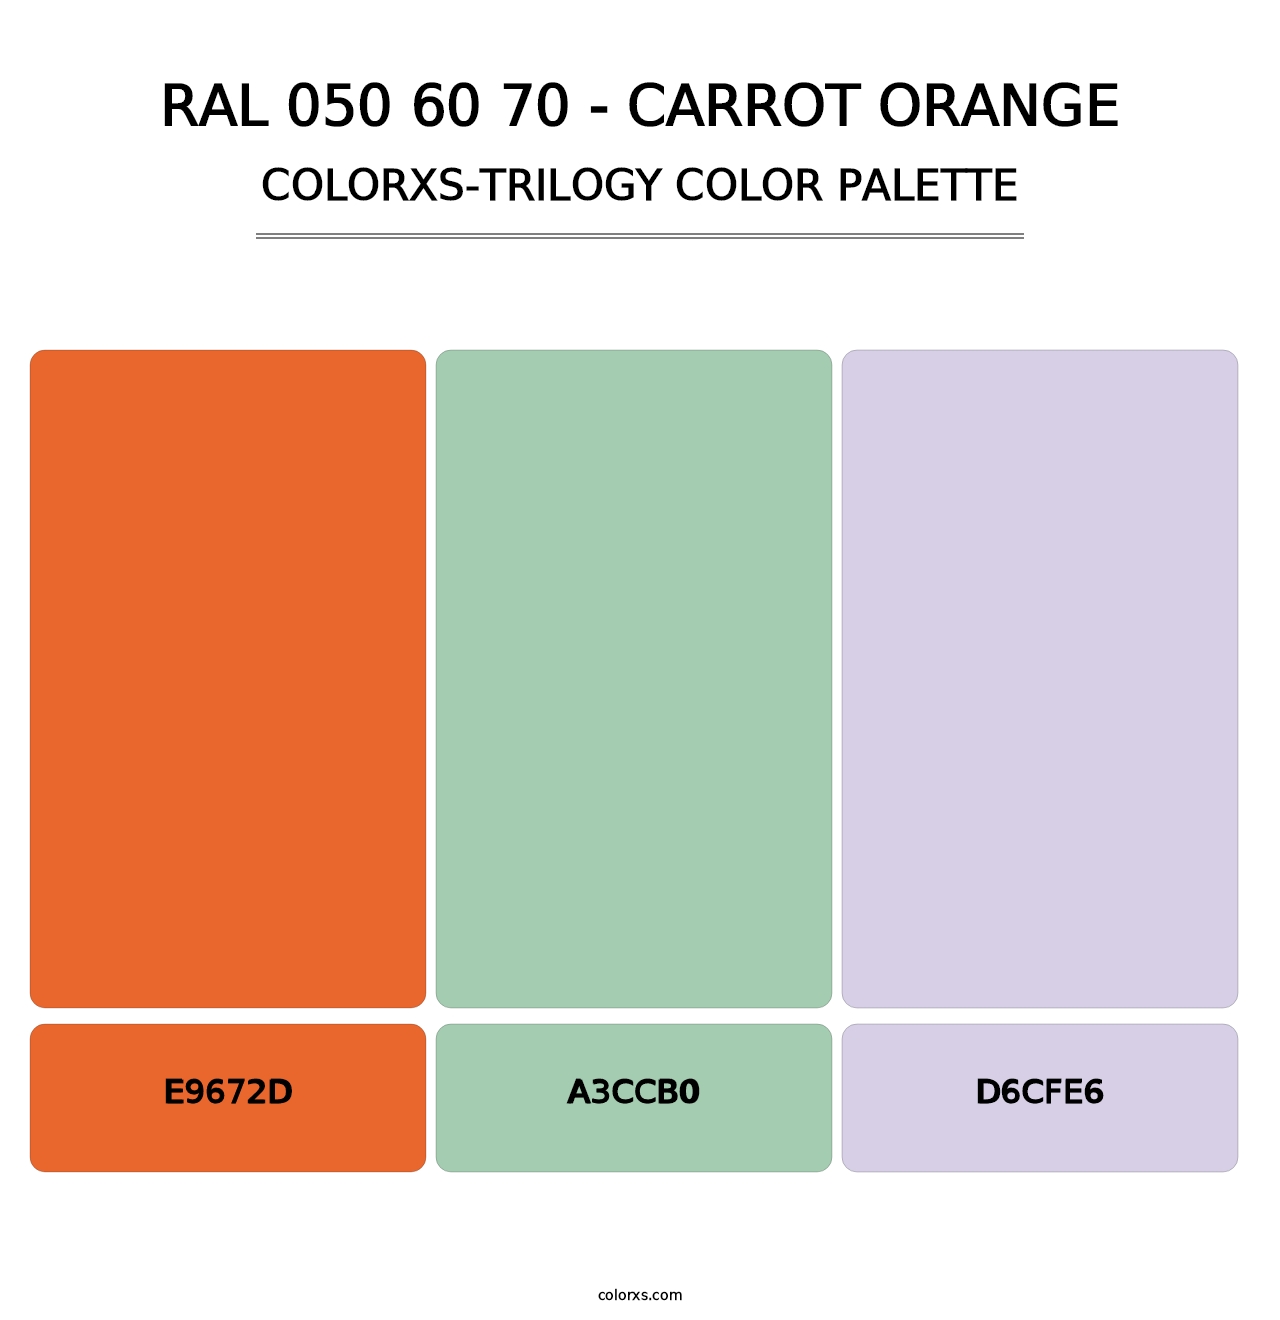 RAL 050 60 70 - Carrot Orange - Colorxs Trilogy Palette